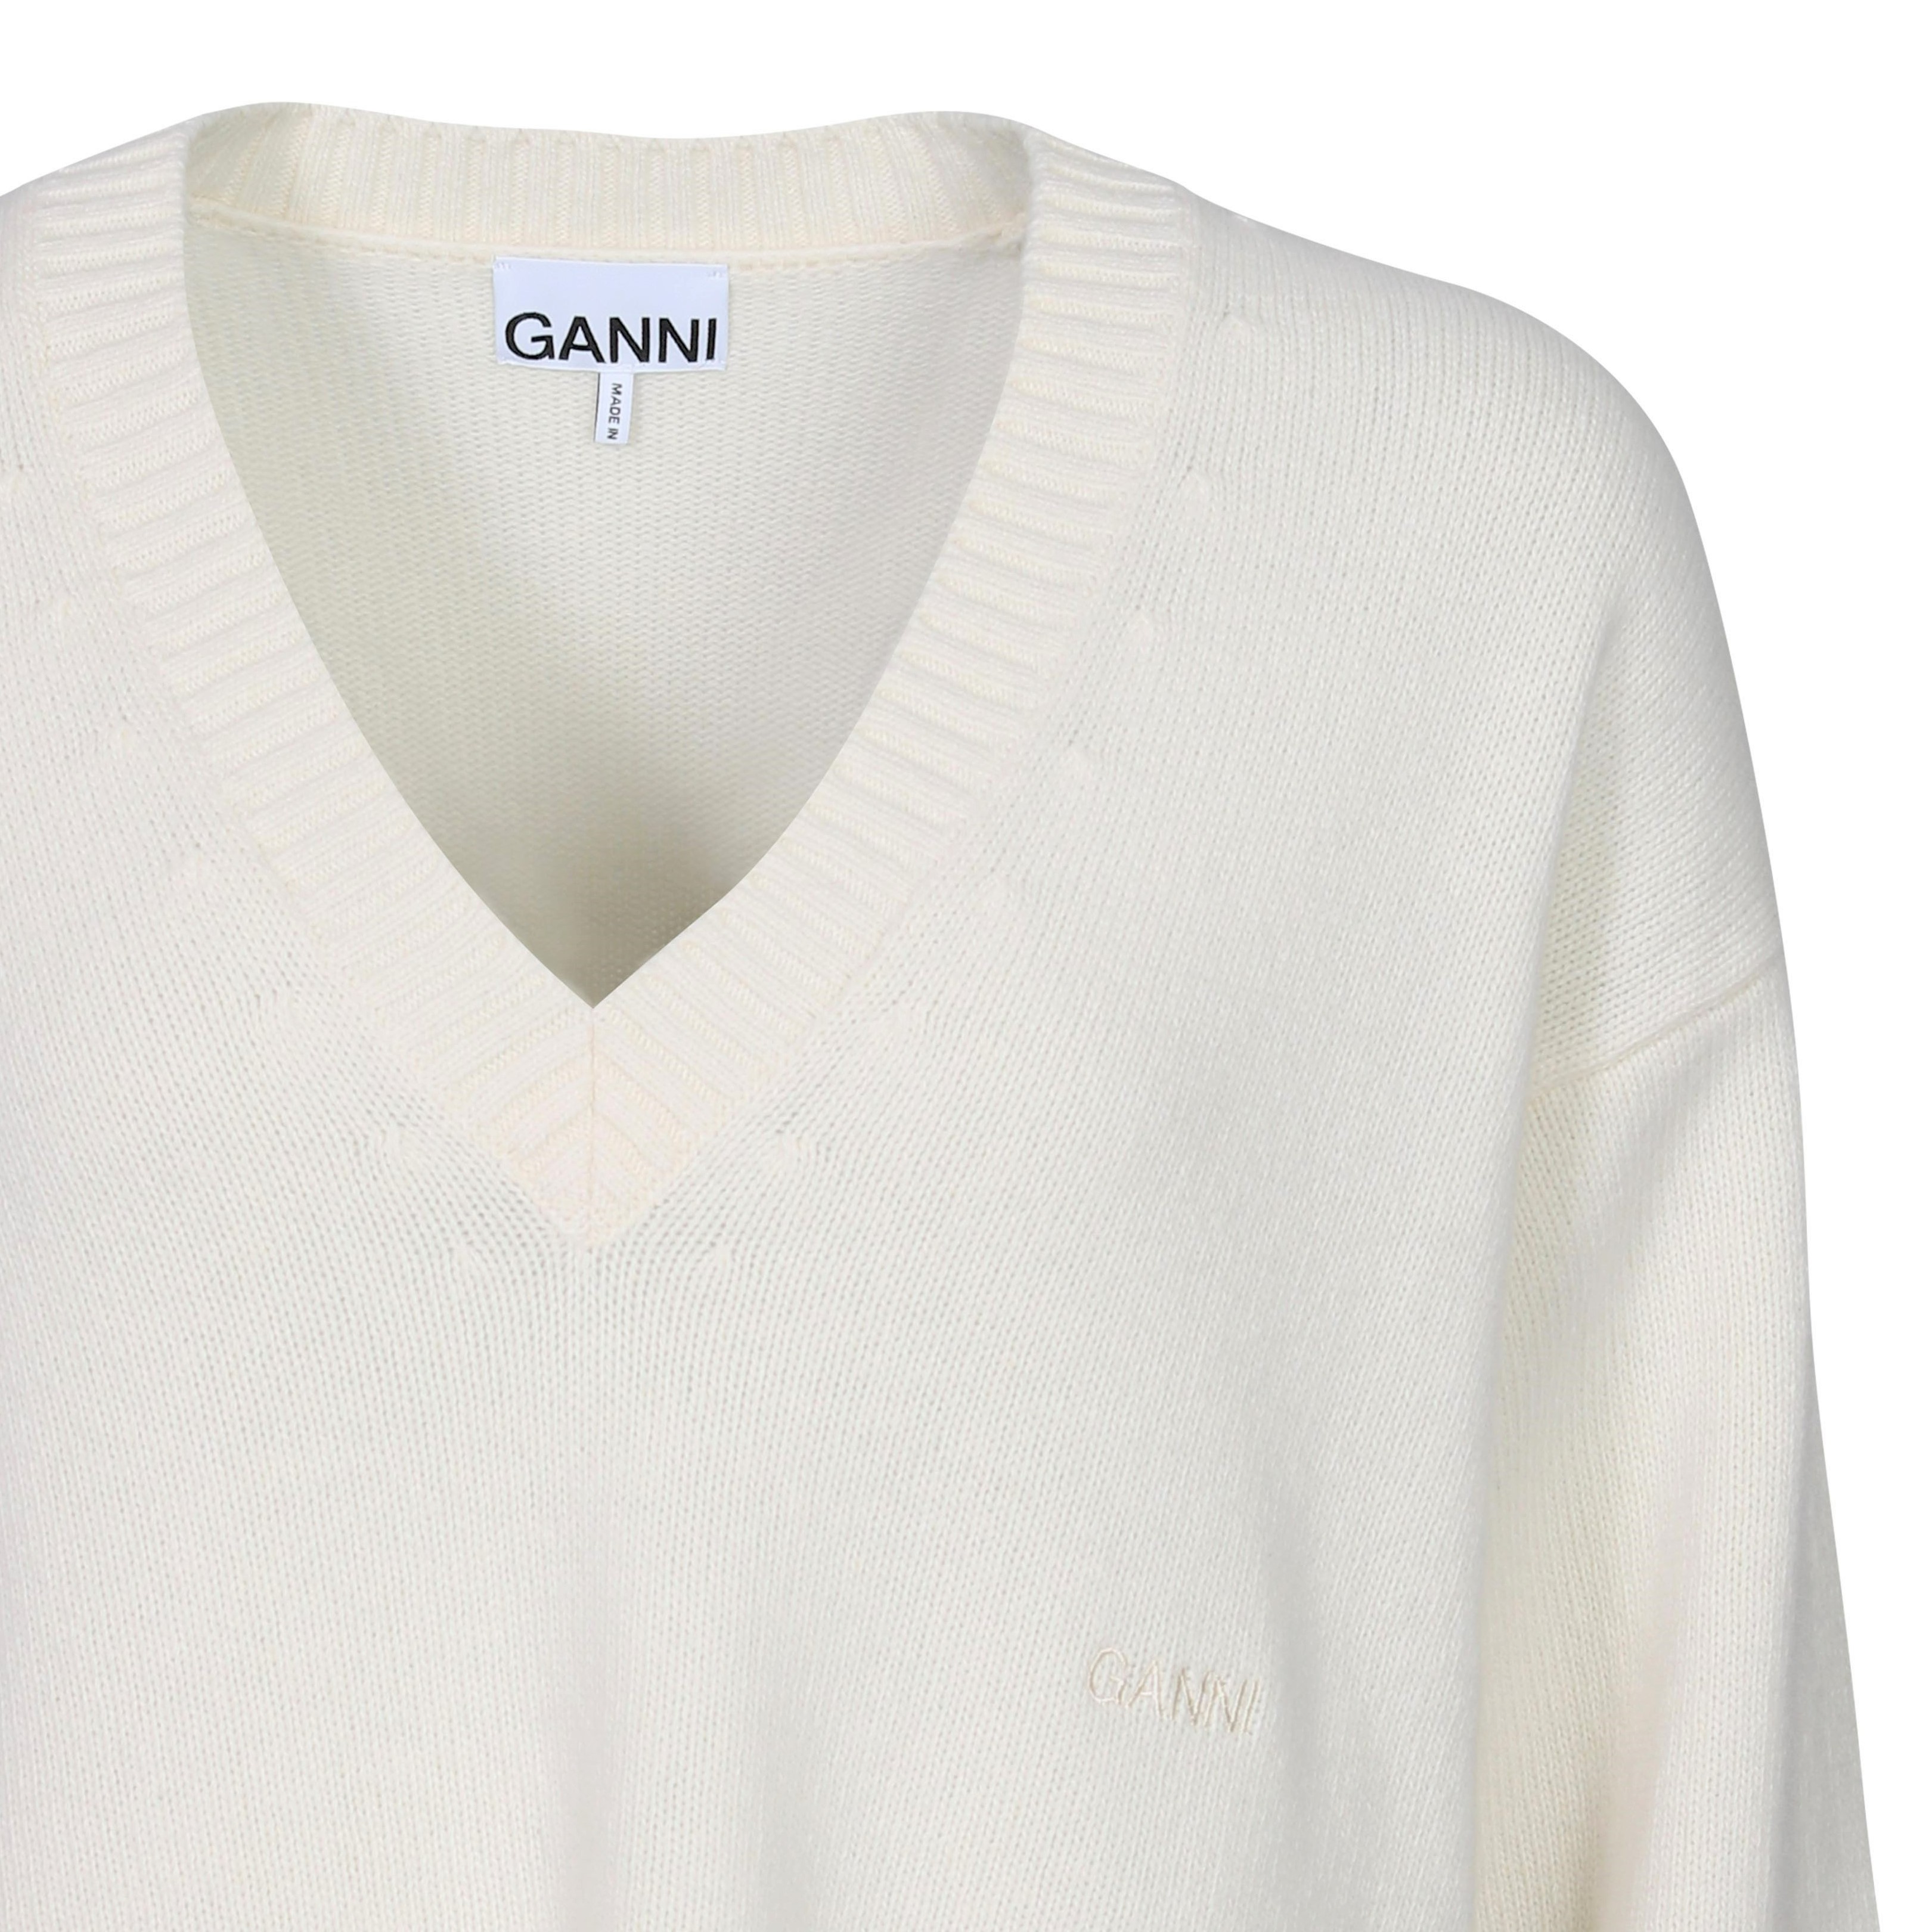 Ganni V-Neck Knit Sweater in Egret S/M